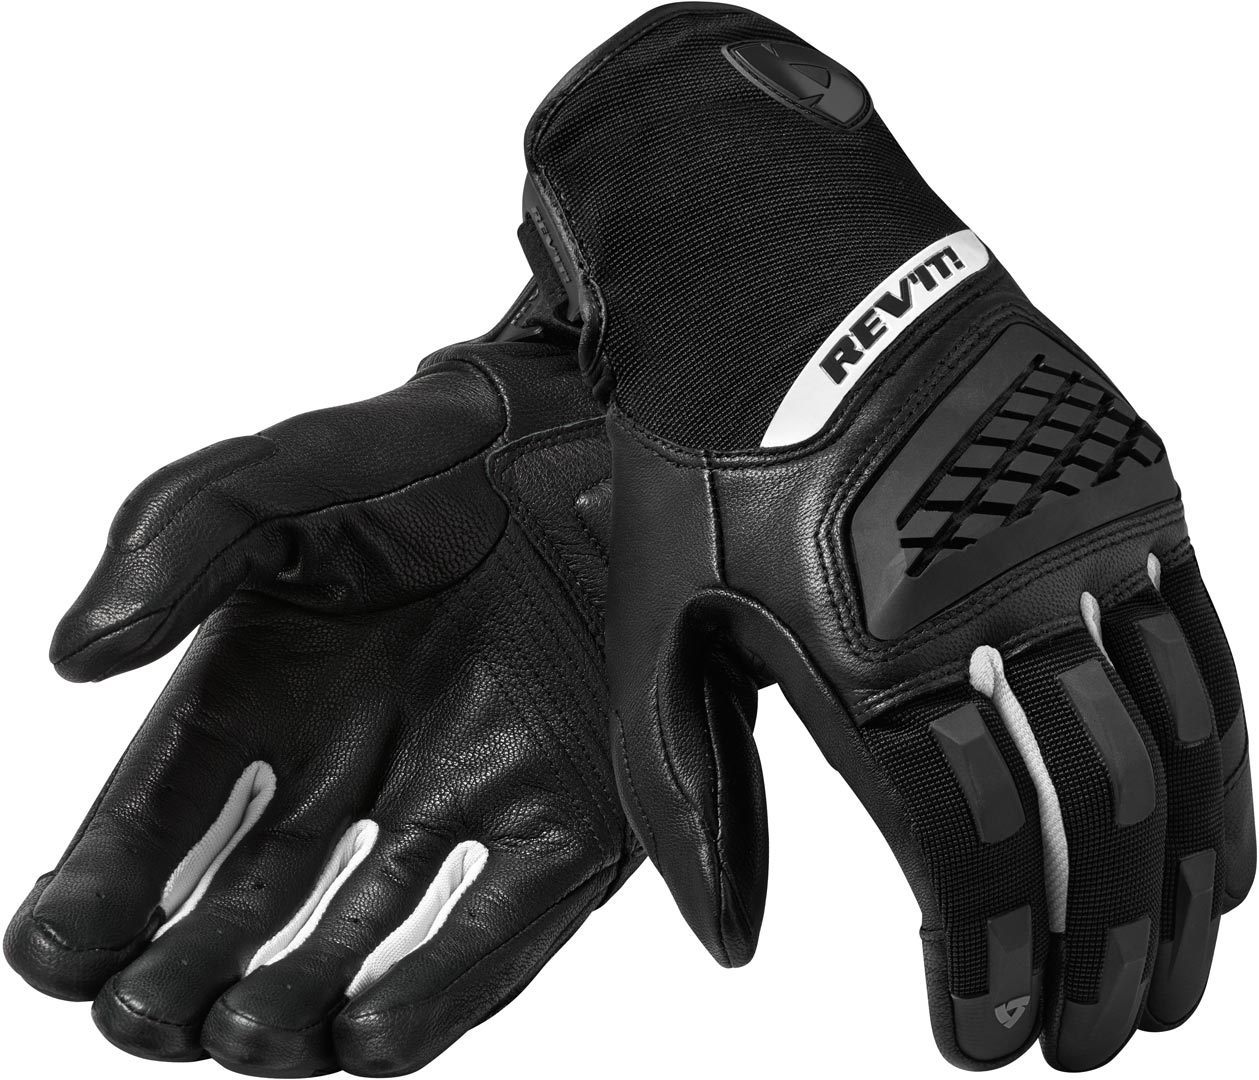 Revit Neutron 3 Motocross Gloves  - Black White